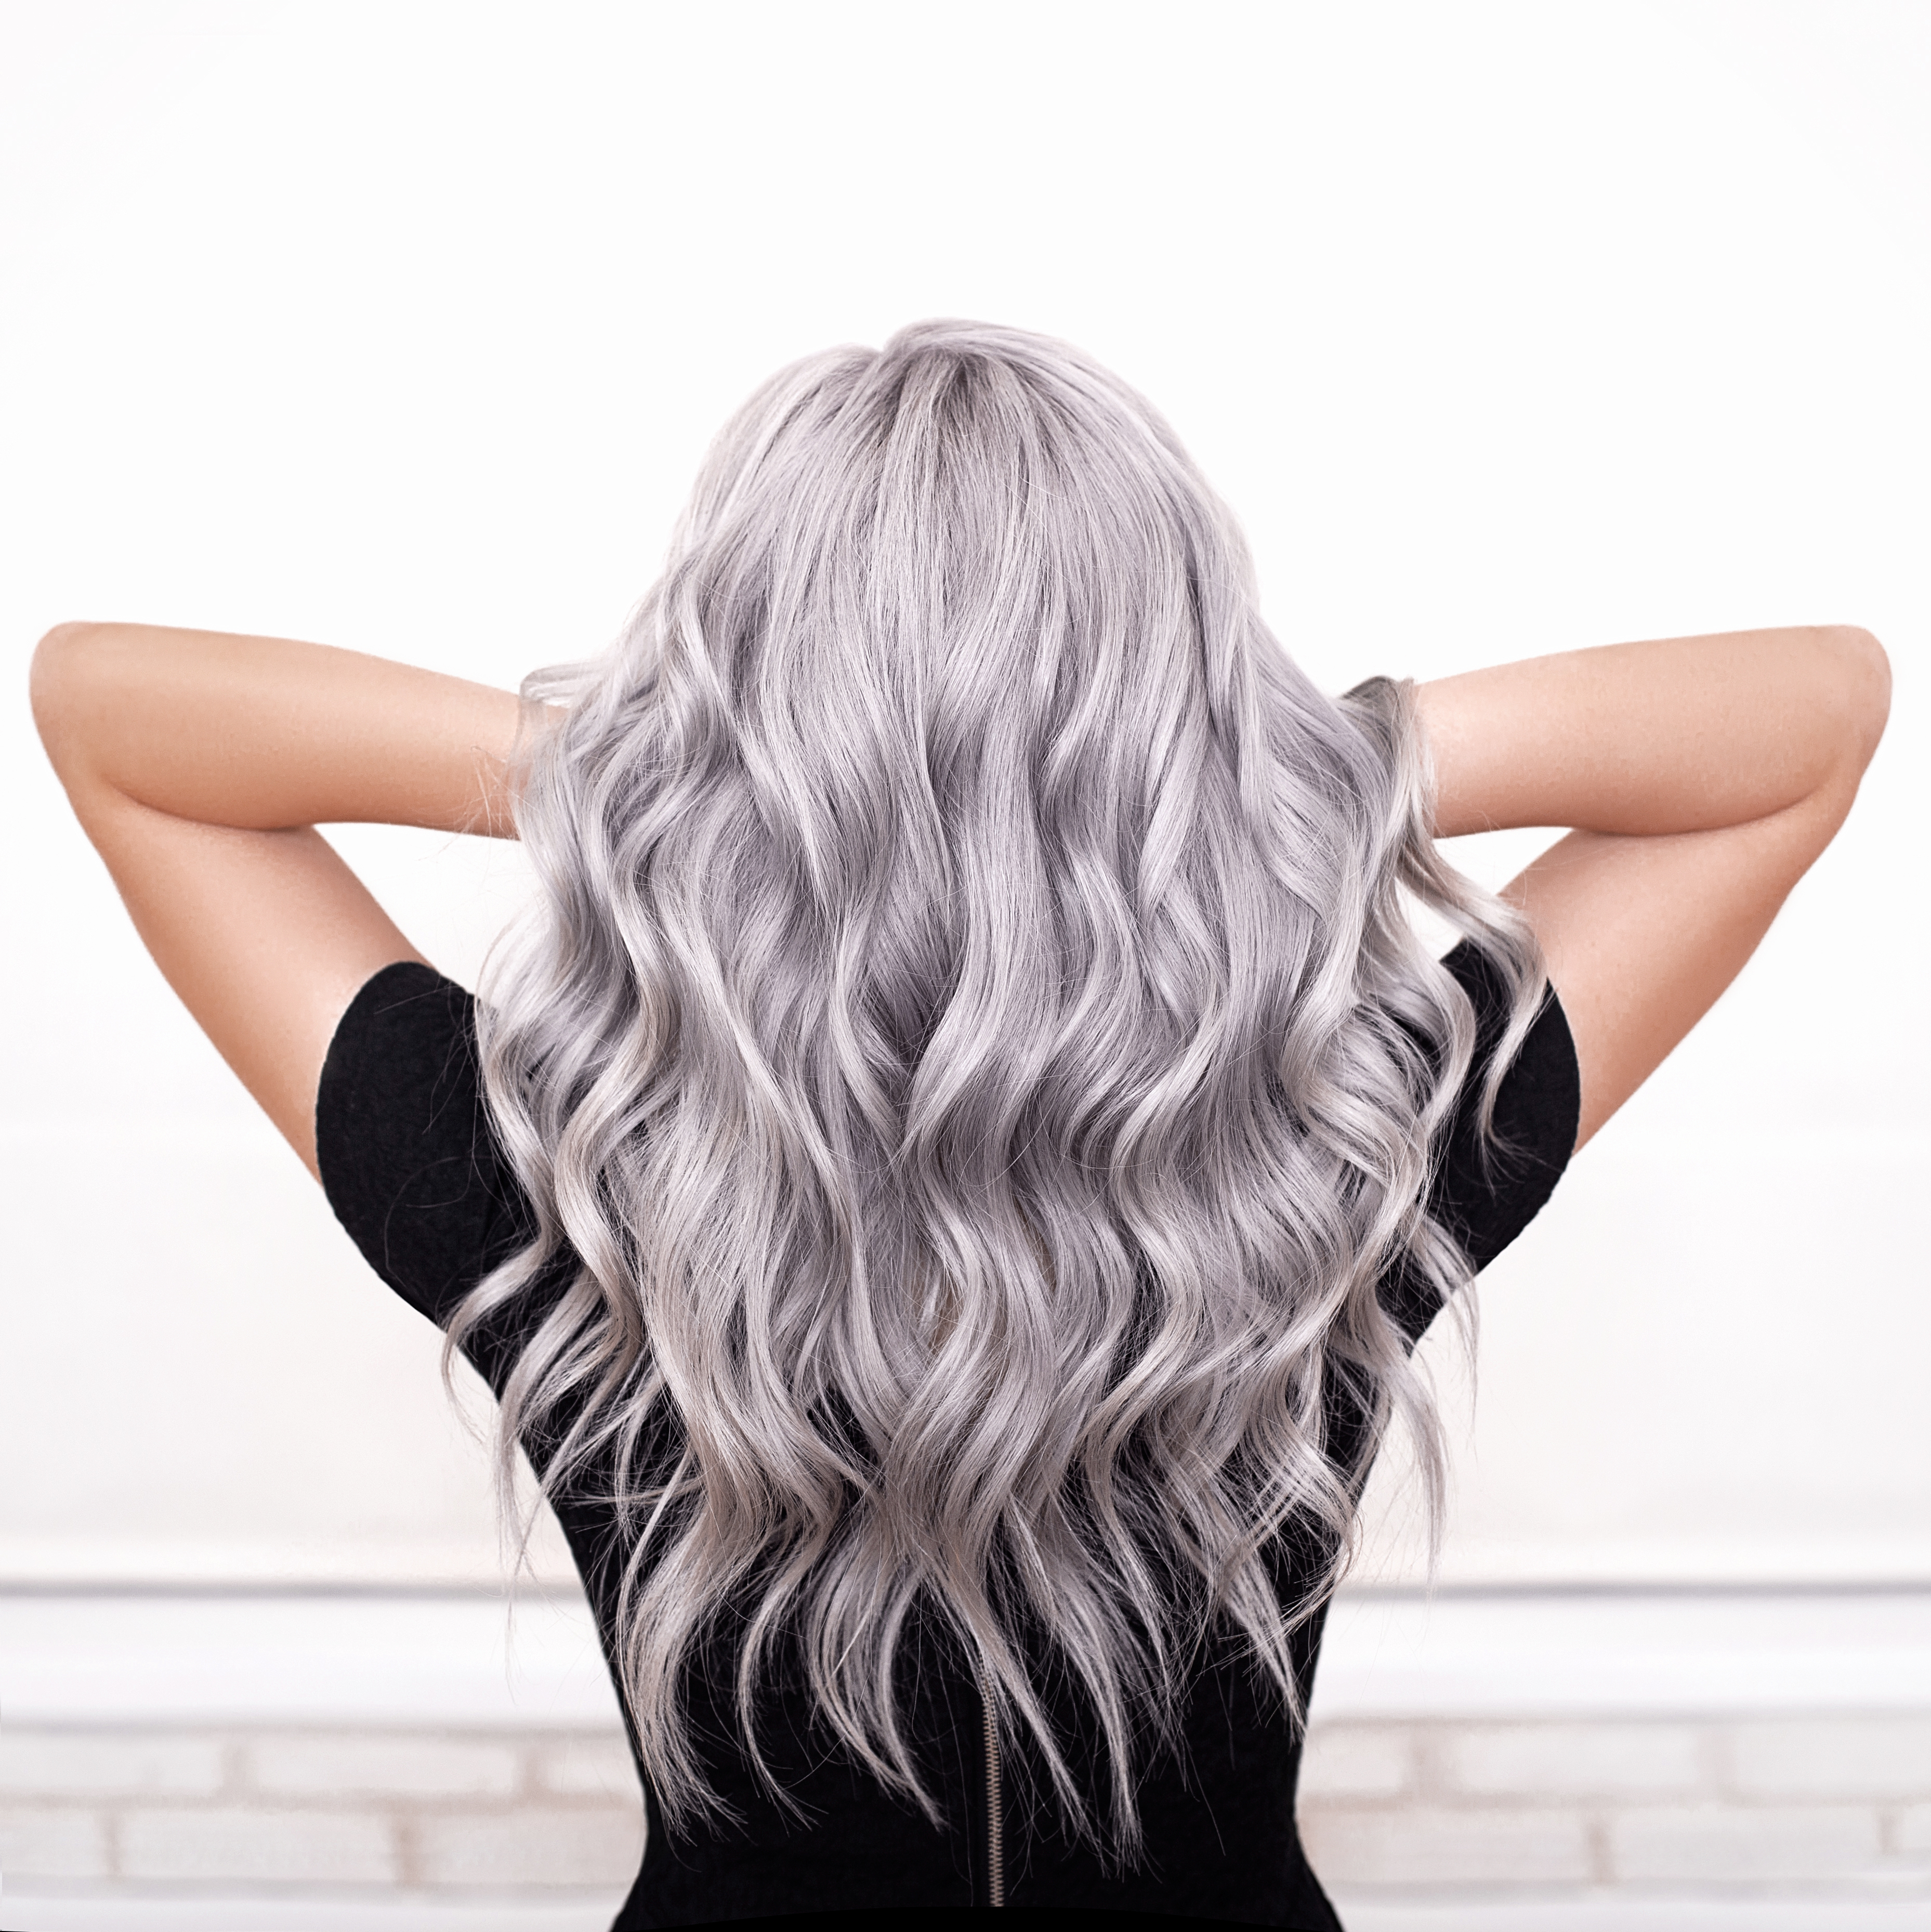 Femme aux cheveux argentés coiffés en boucles | Source : Shutterstock